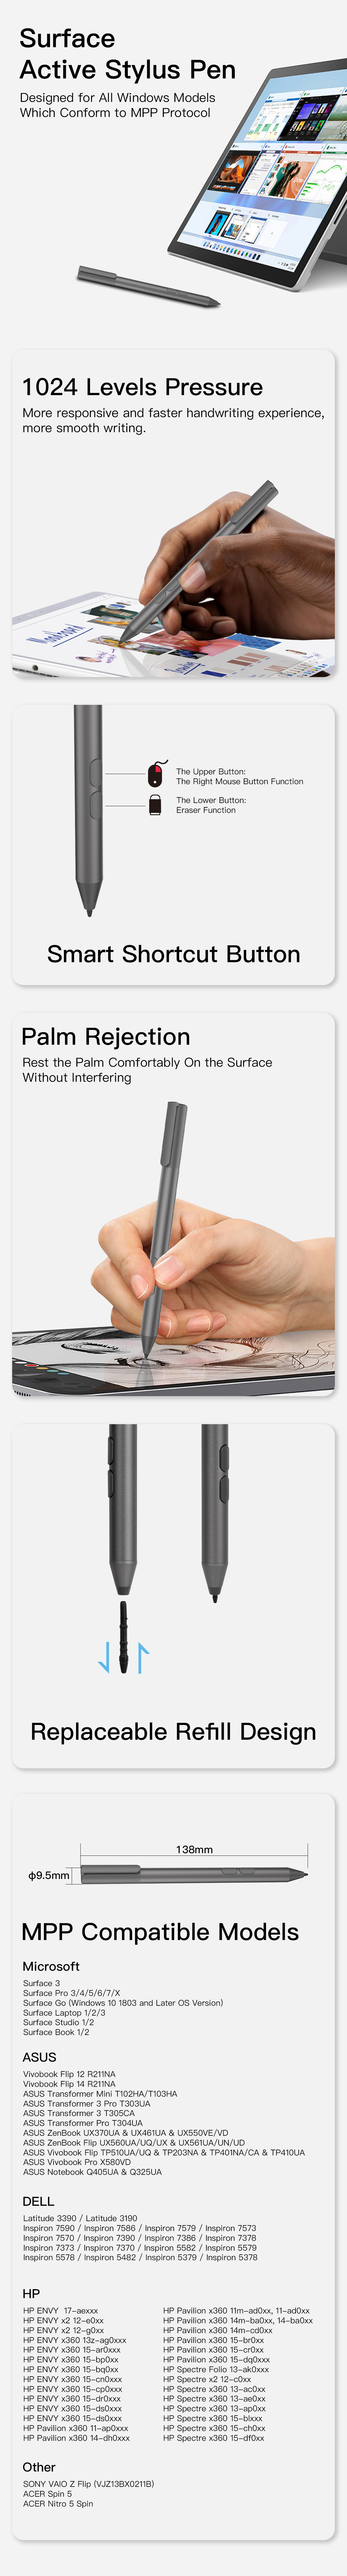 Surface Active Stylus Pen MPP493.jpg